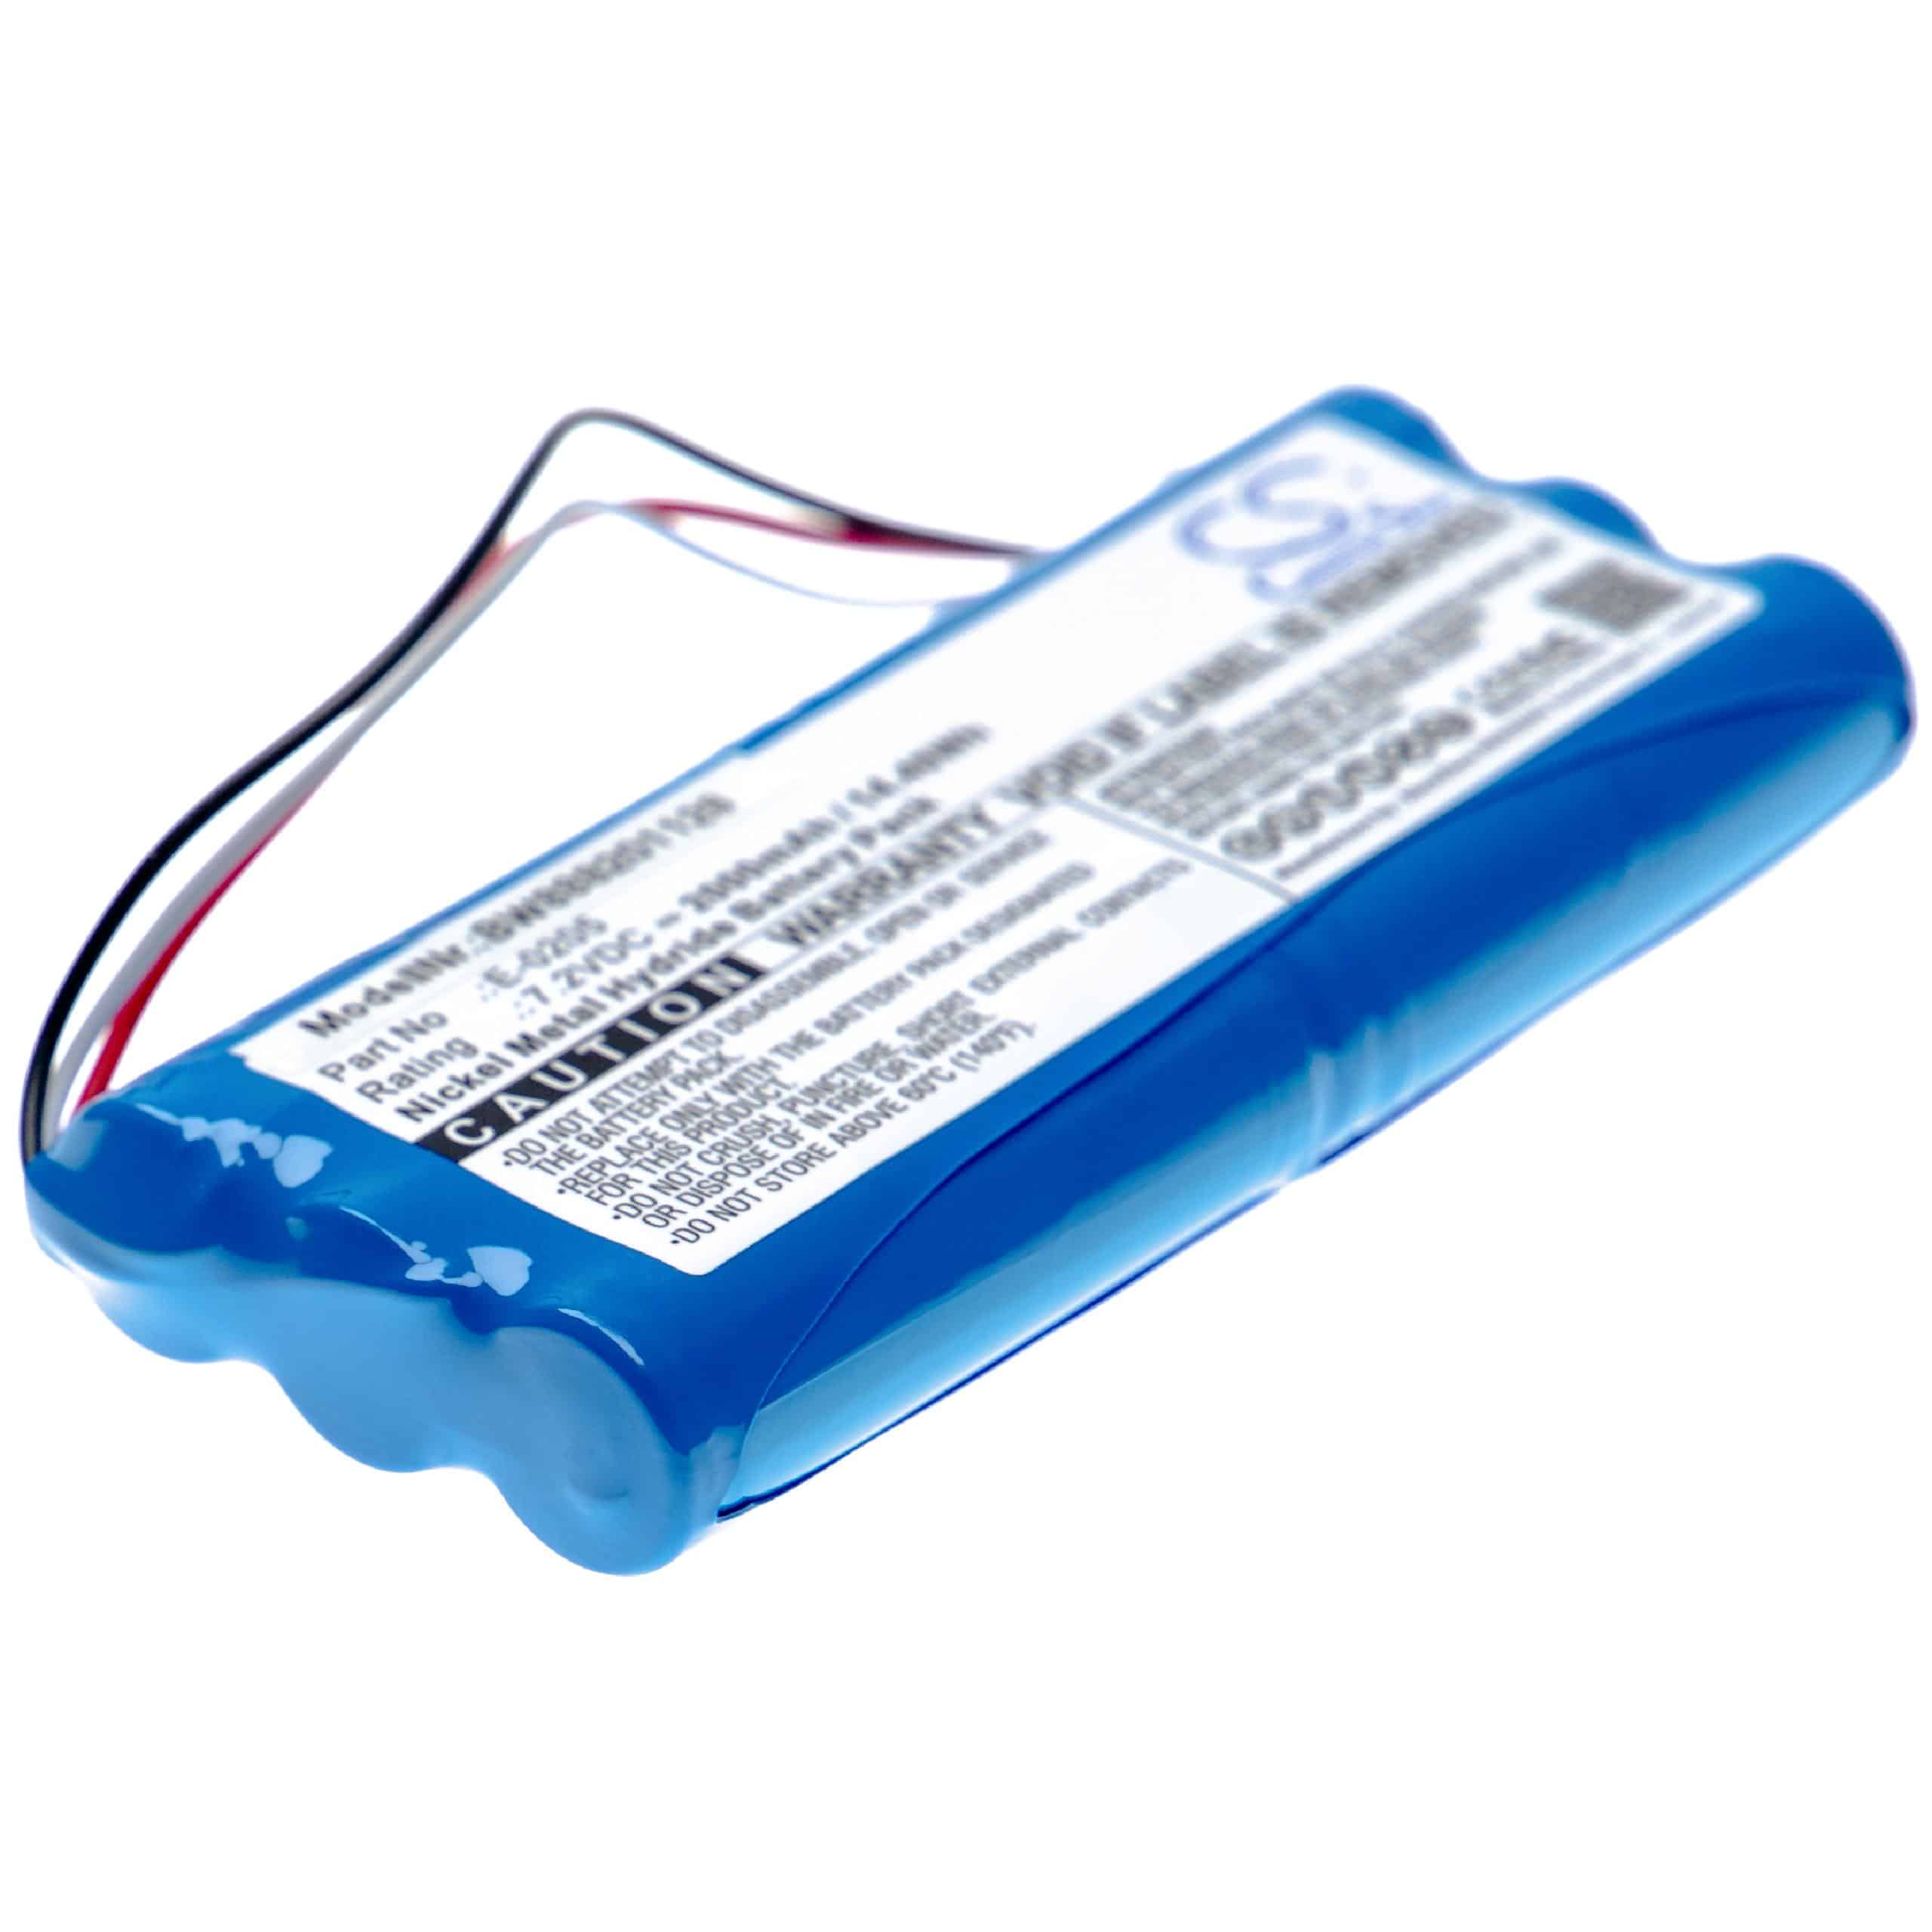 Batterie remplace Aaronia E-0205, ACE604396 2S1P pour outil de mesure - 2000mAh 7,2V NiMH